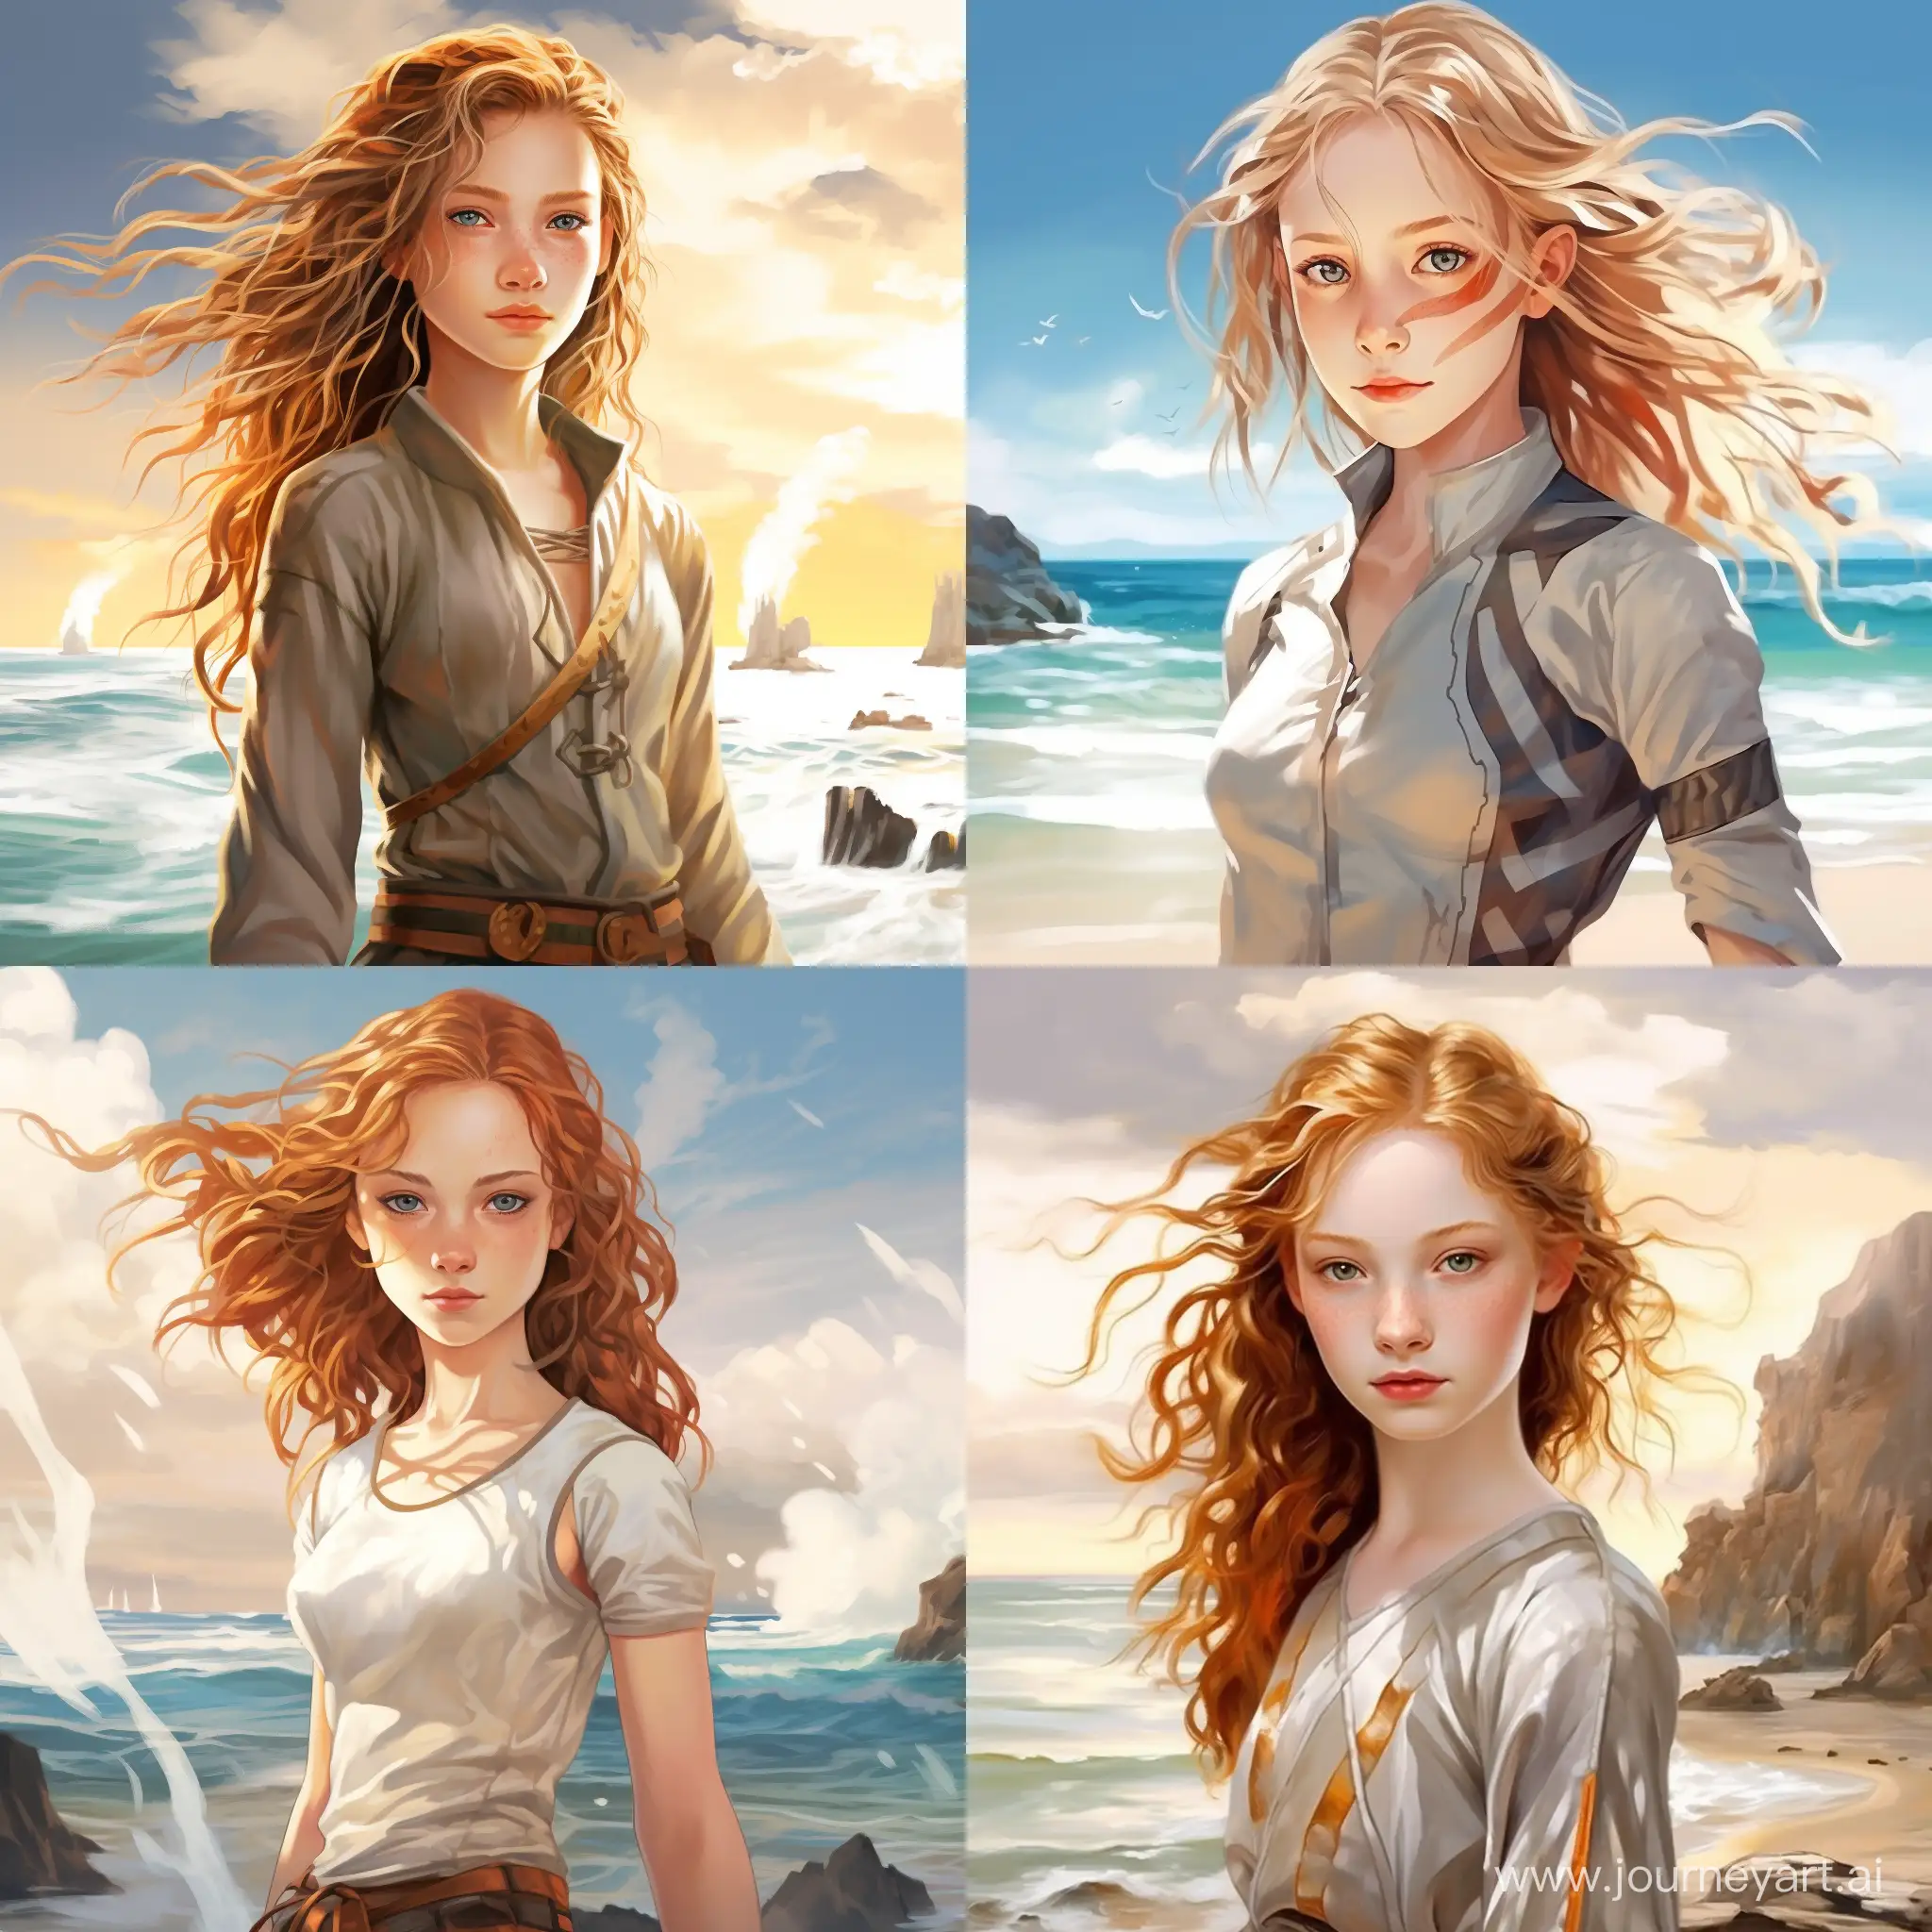 Adventurous-GoldenHaired-Teen-by-the-Seaside-Avatar-Style-Art